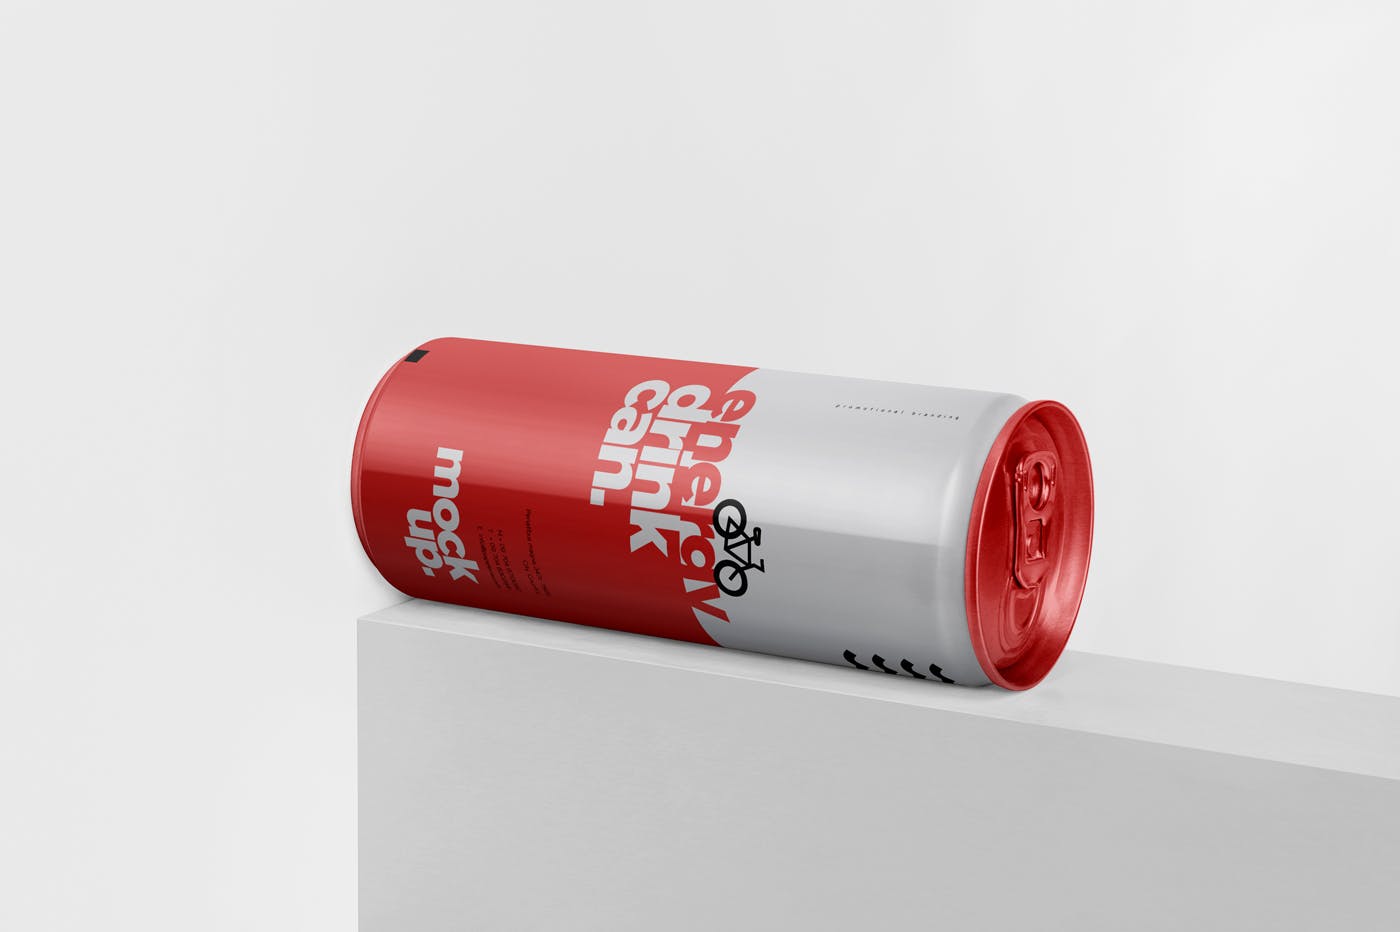 能量饮料易拉罐罐头外观设计16图库精选模板 Energy Drink Can Mock-Up – 250 ml插图(2)